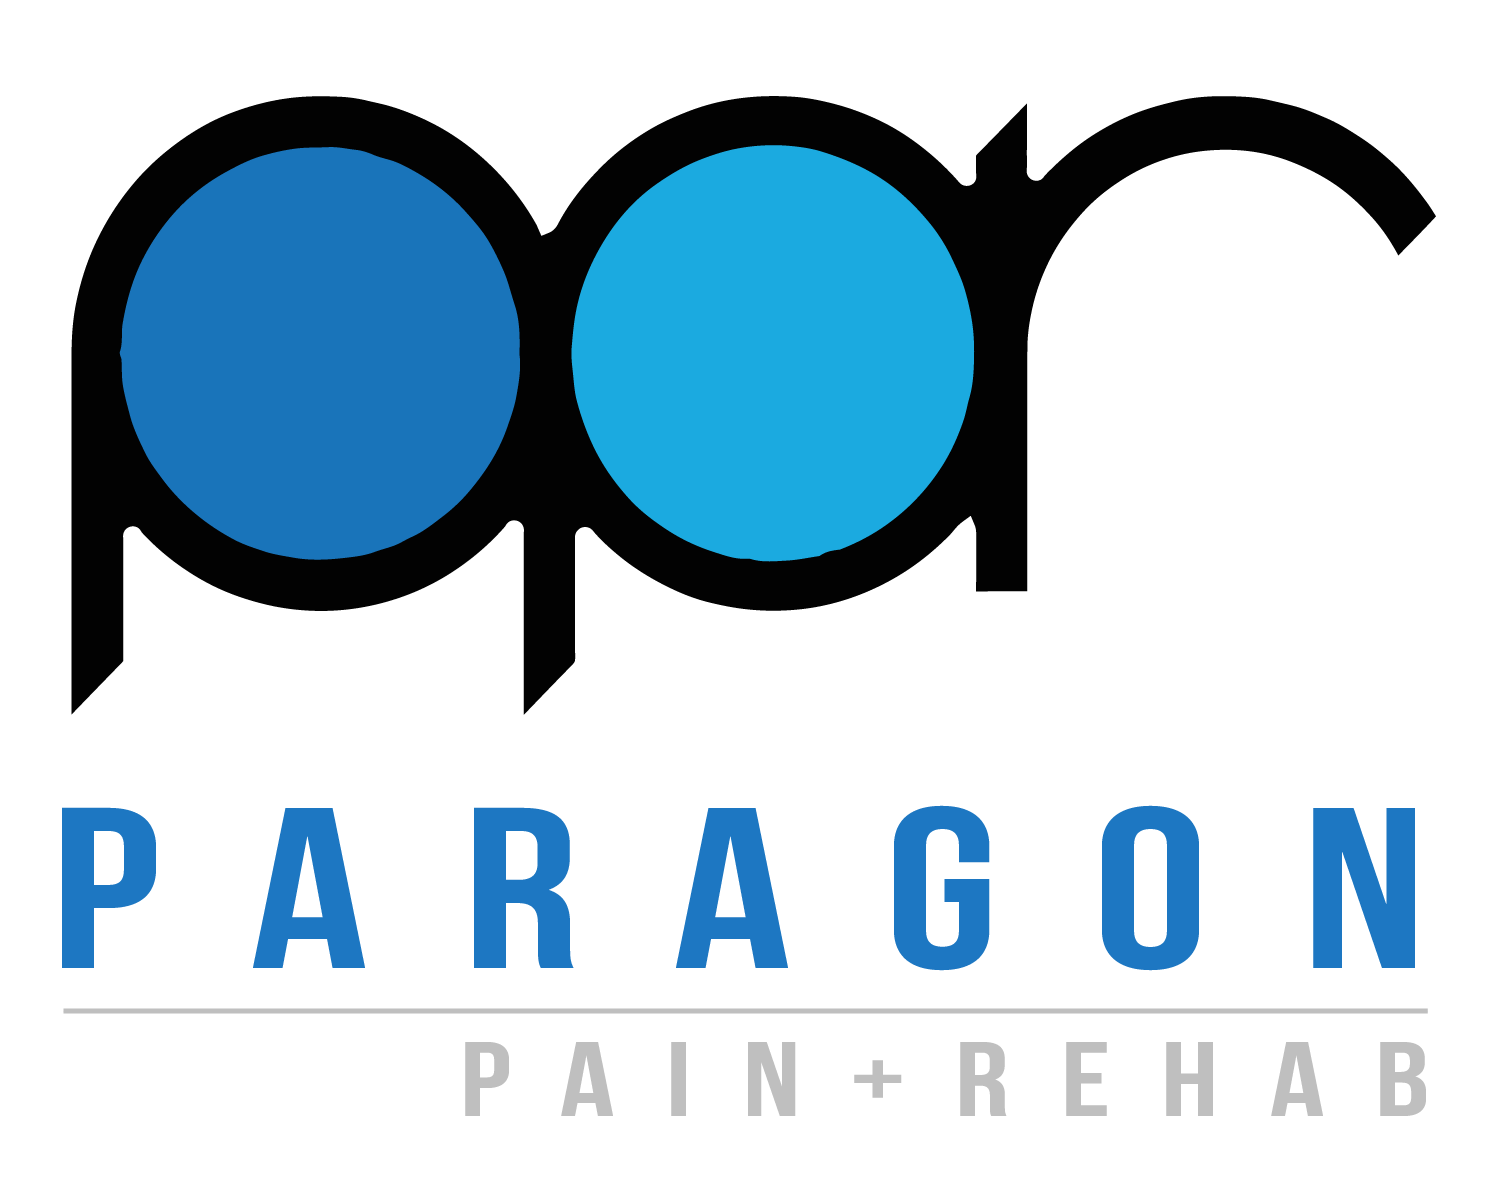 pain clipart pain management